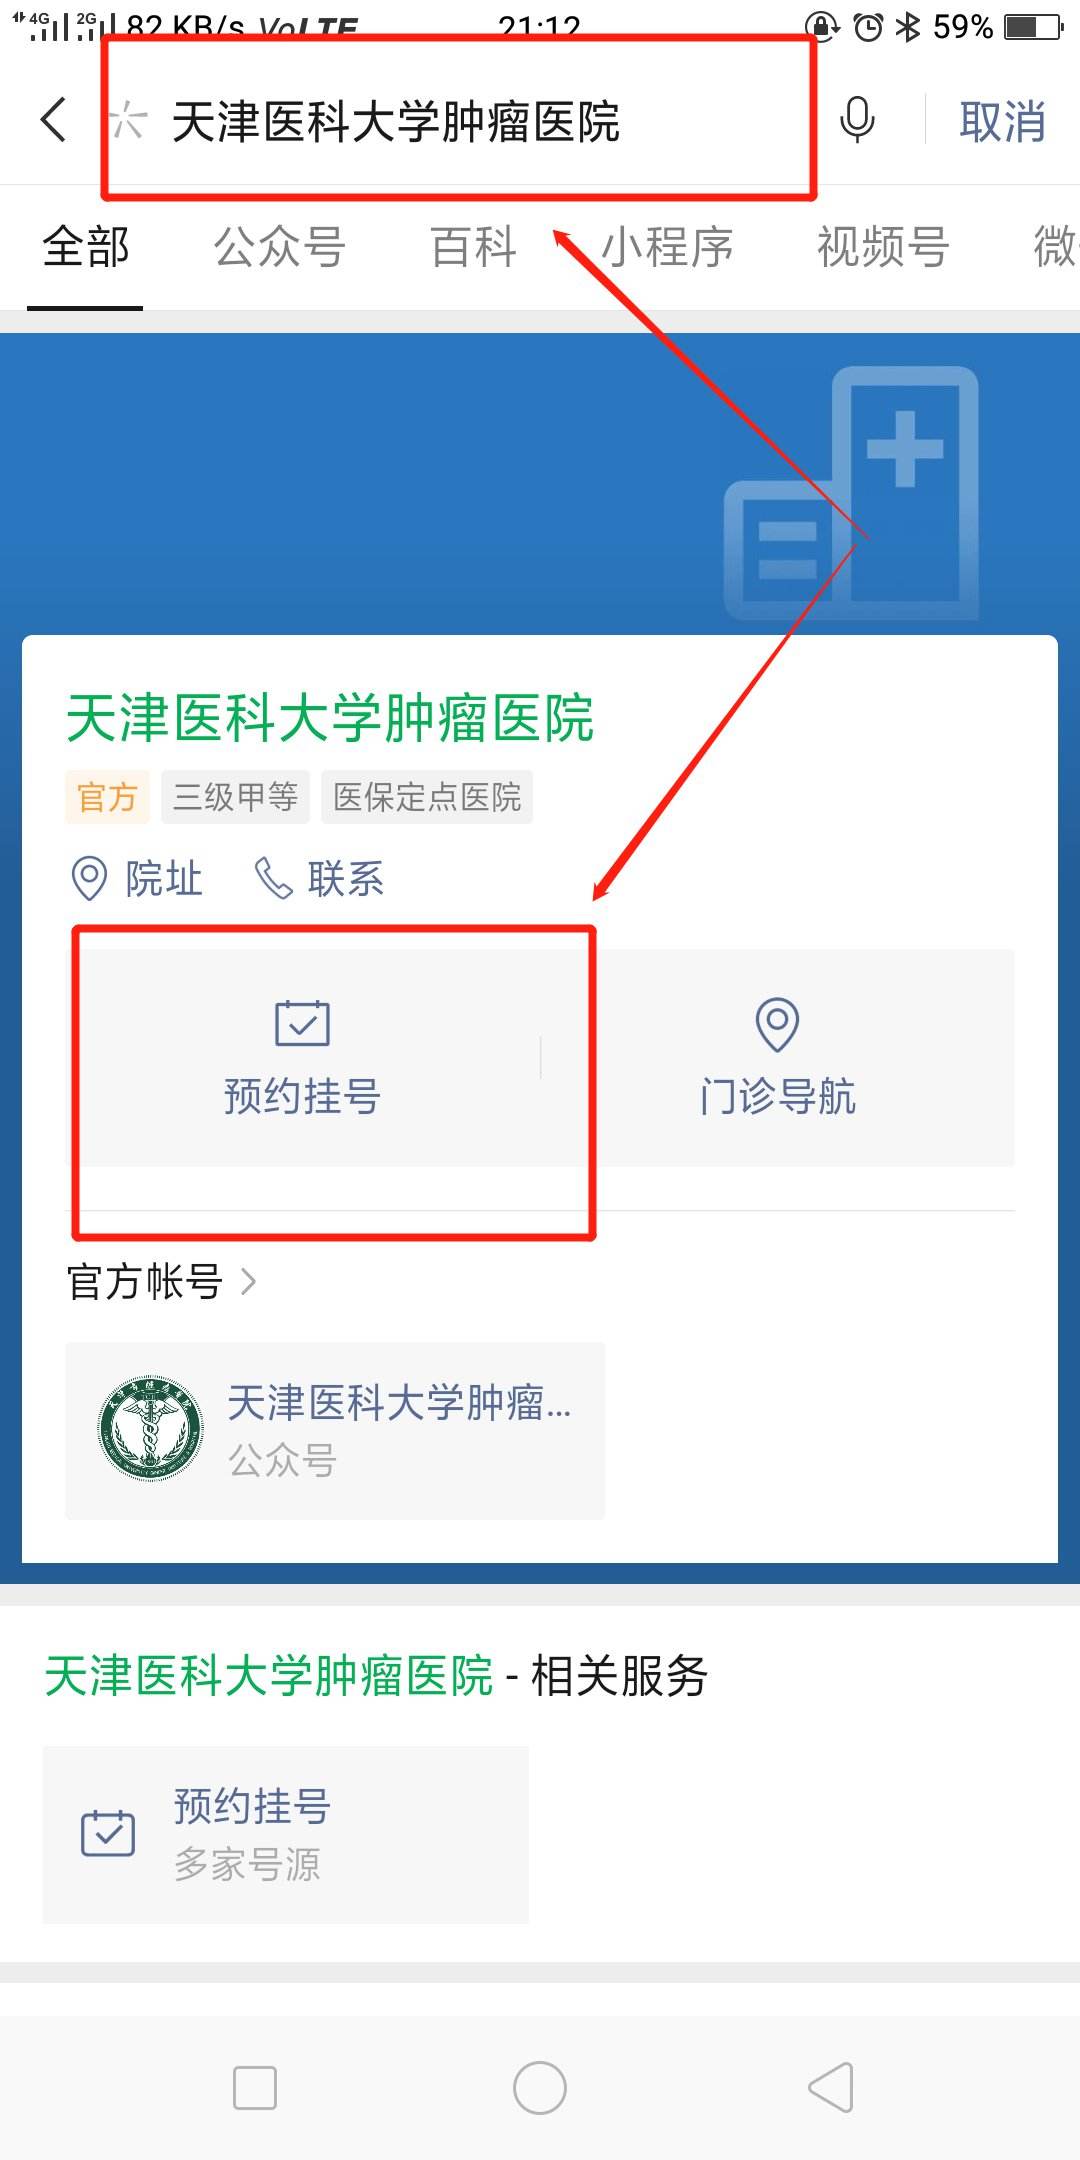 北京大学肿瘤医院跑腿挂号，保证为客户私人信息保密的简单介绍